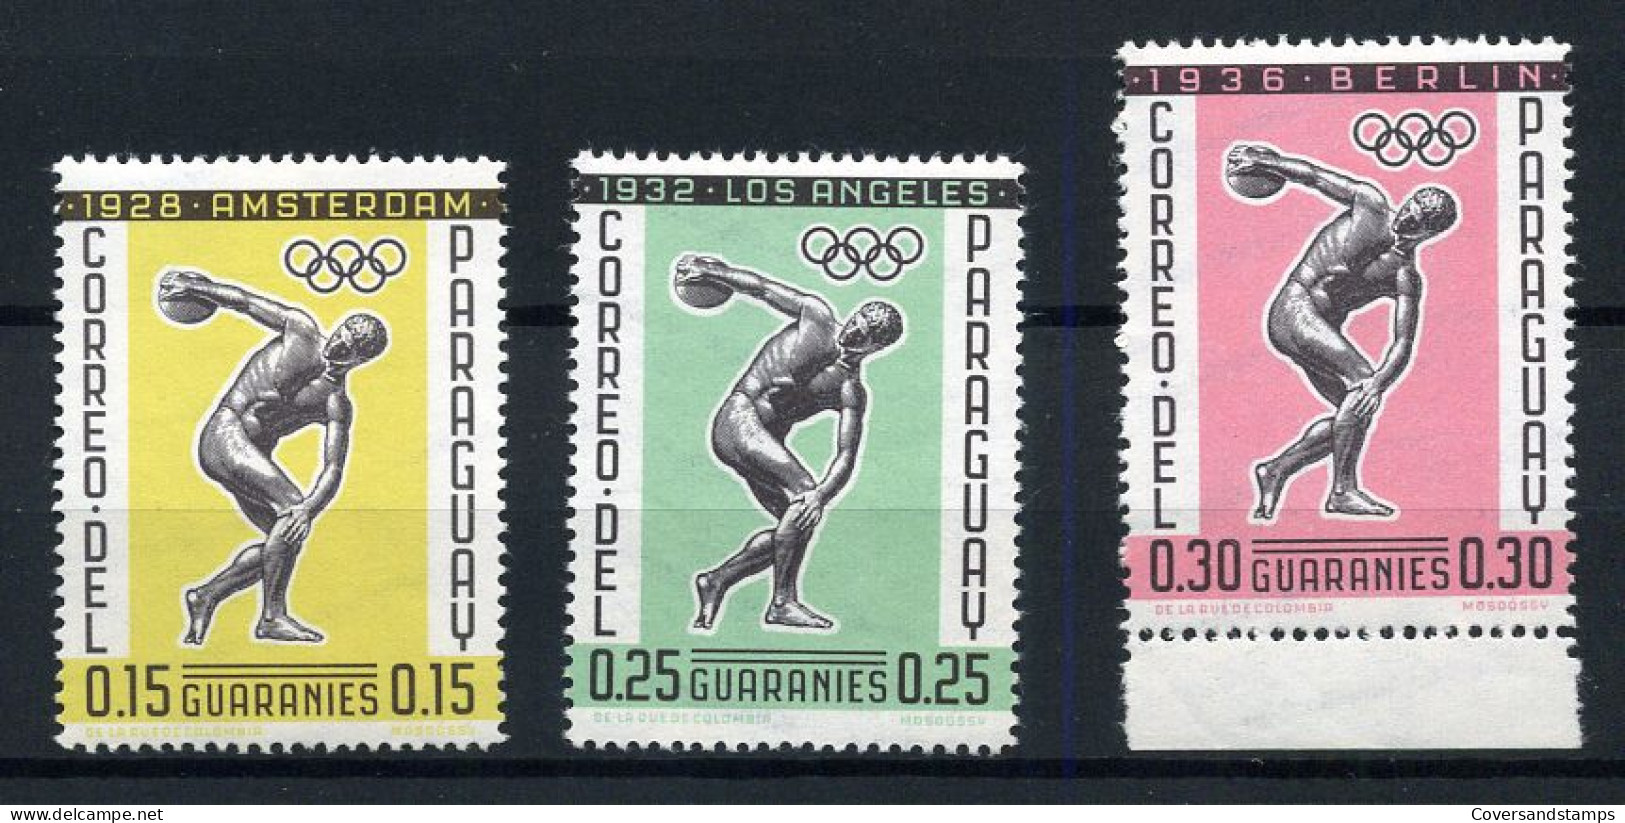 Paraguay - Olympic Games Berlin 1936 - Zomer 1936: Berlijn